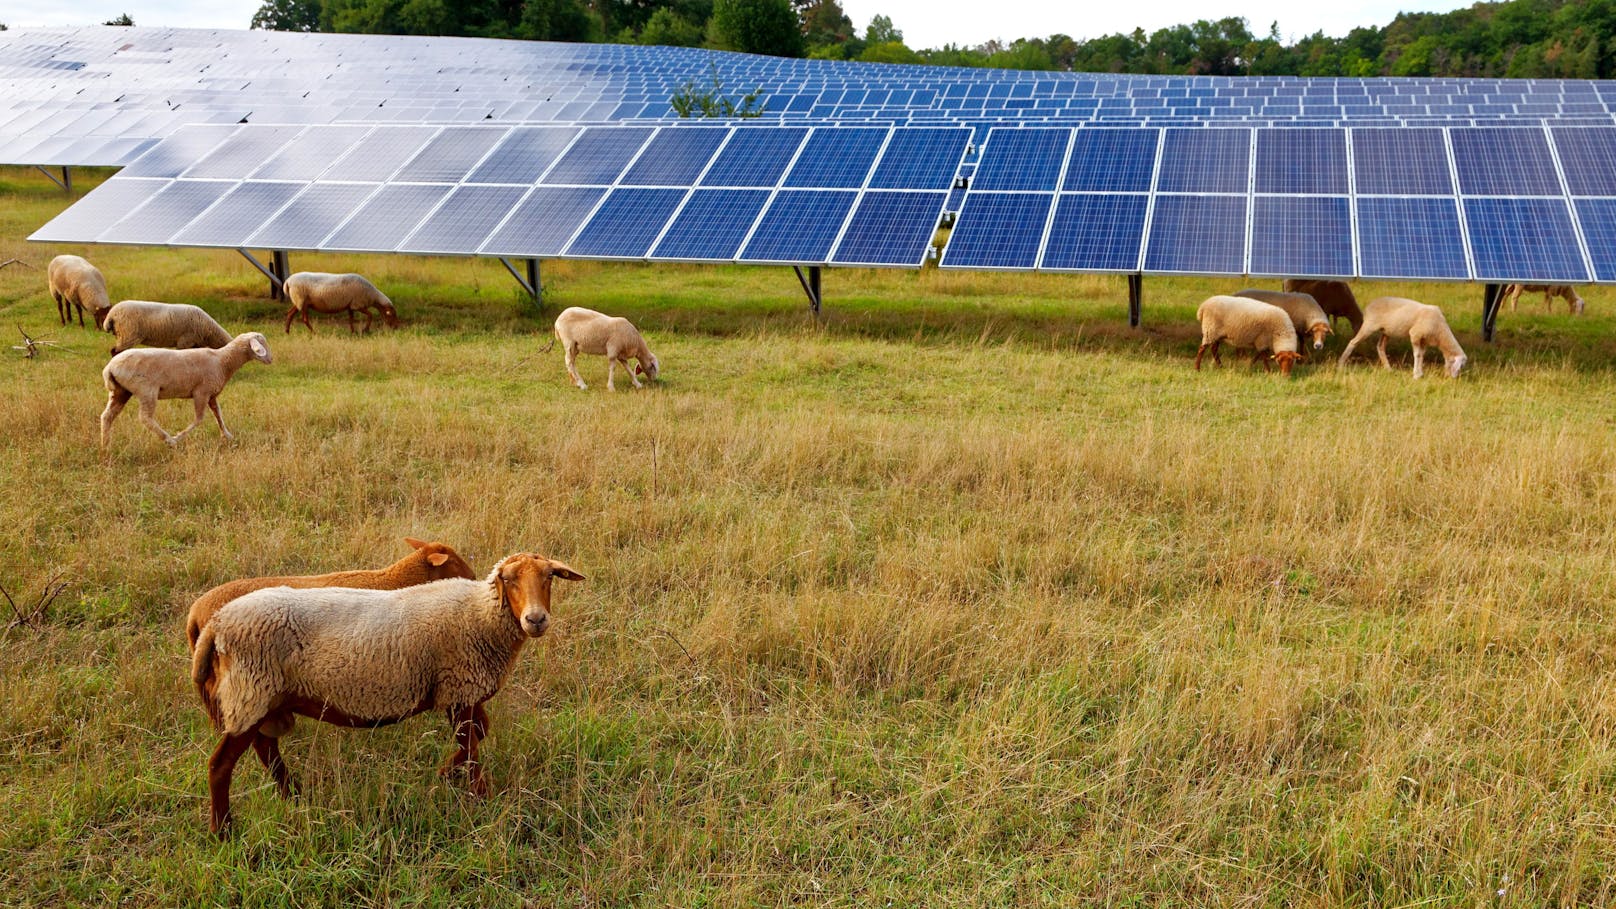 Ärger über Photovoltaik-Anlage in Naturschutzgebiet